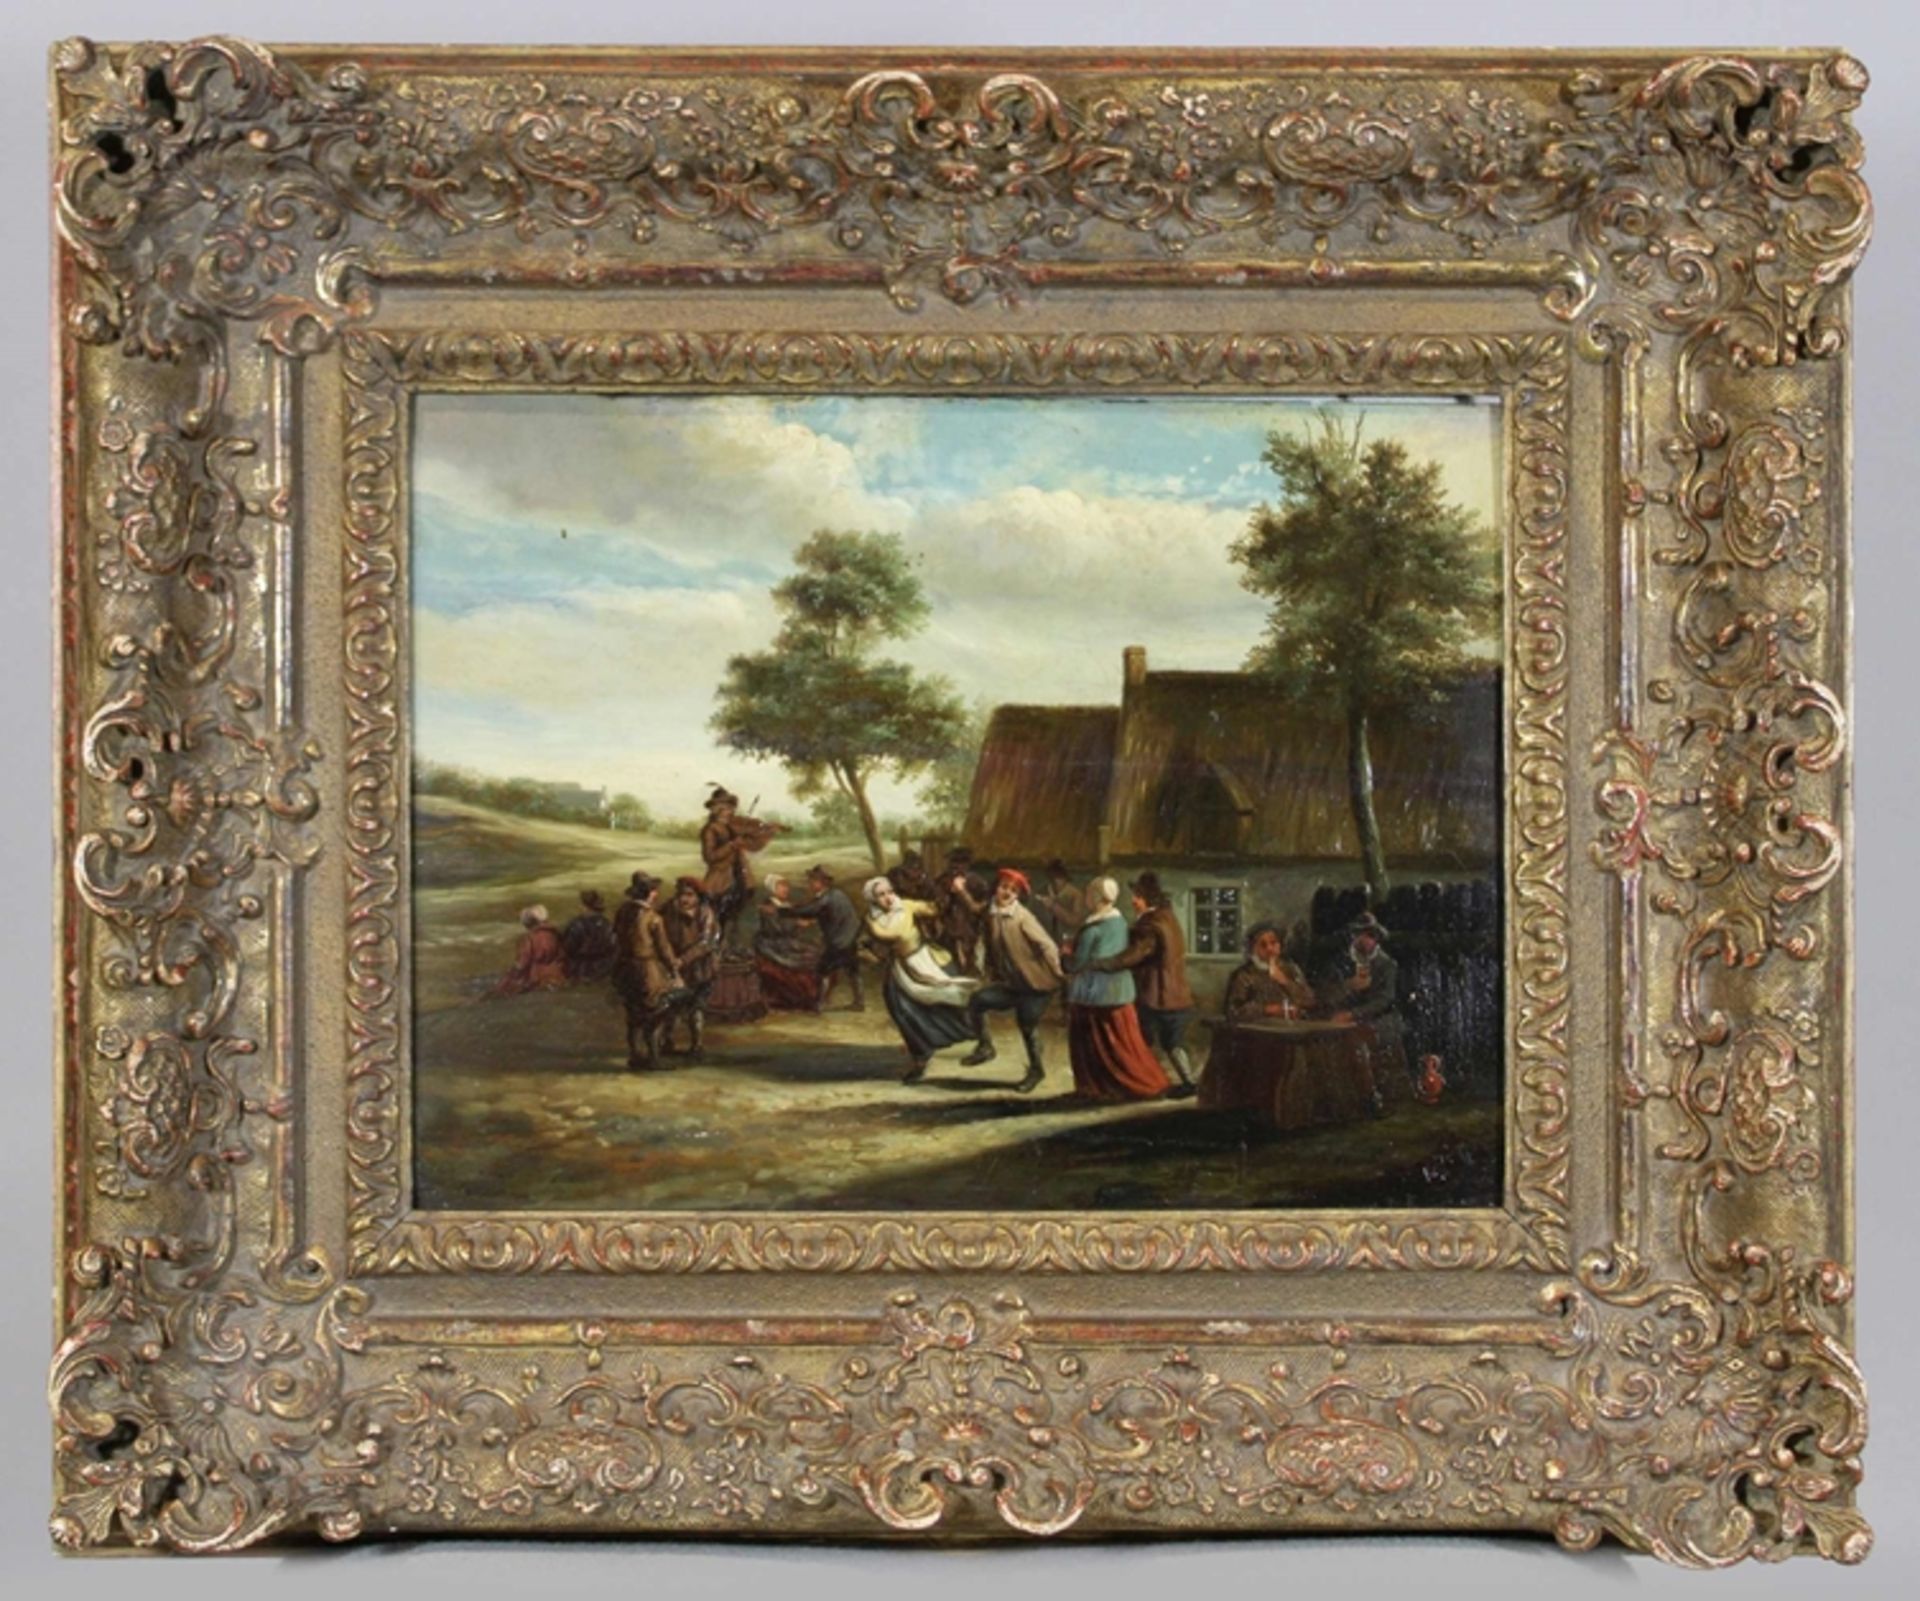 David Teniers (flämisch) (zugeschrieben), Das Tanzvergnügen, Öl auf Holz, verso bezeichnet, Darstel - Bild 2 aus 2